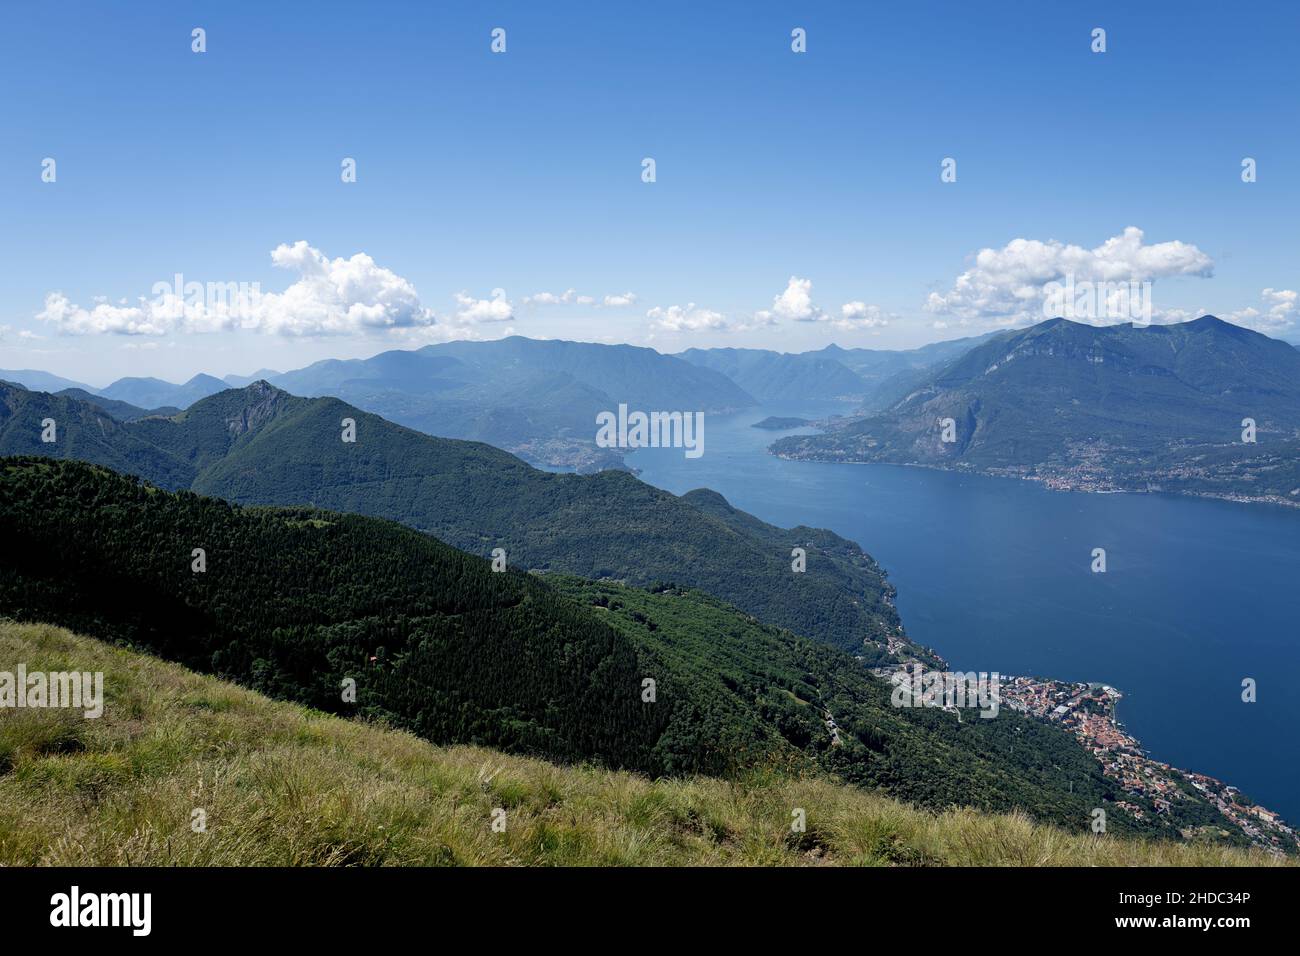 Vista superior del lago Como y los Alpes lo rodean en un trekking de verano. Foto de stock